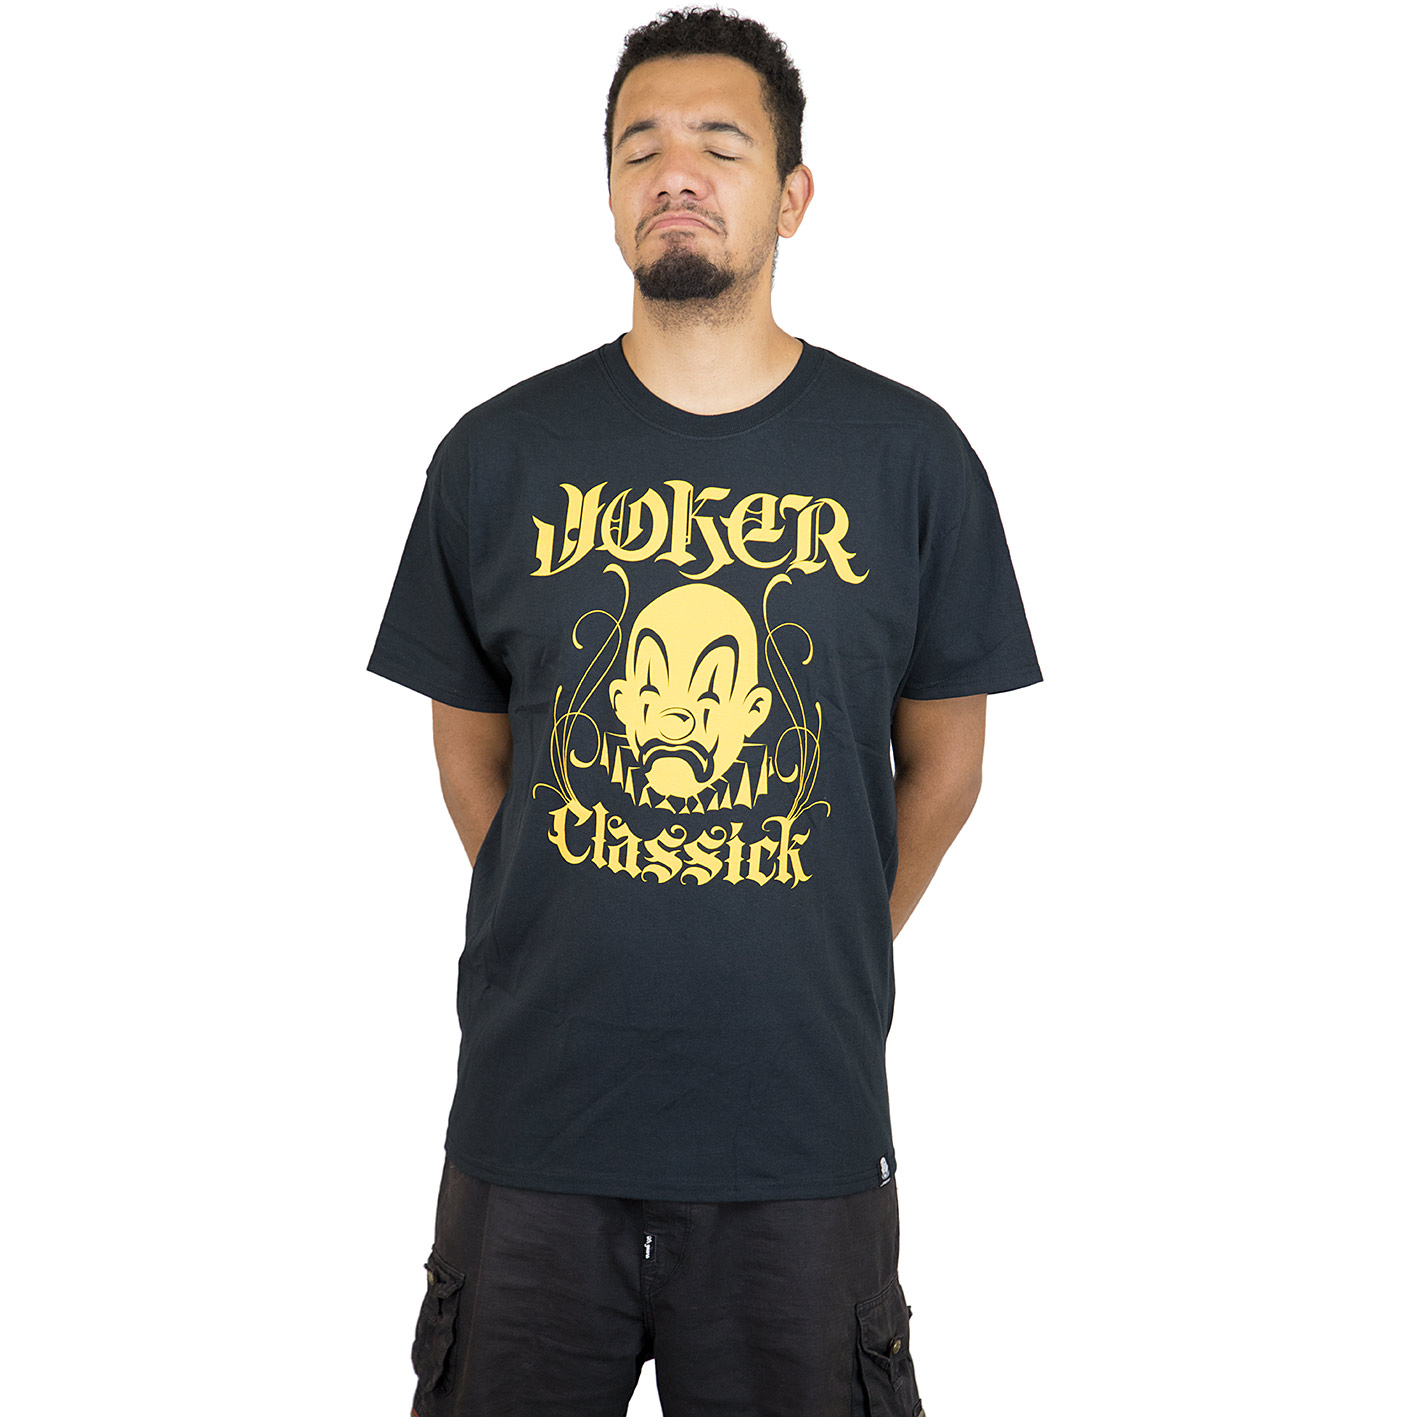 ☆ Joker Brand T-Shirt Classick Clown schwarz/gold - hier bestellen!